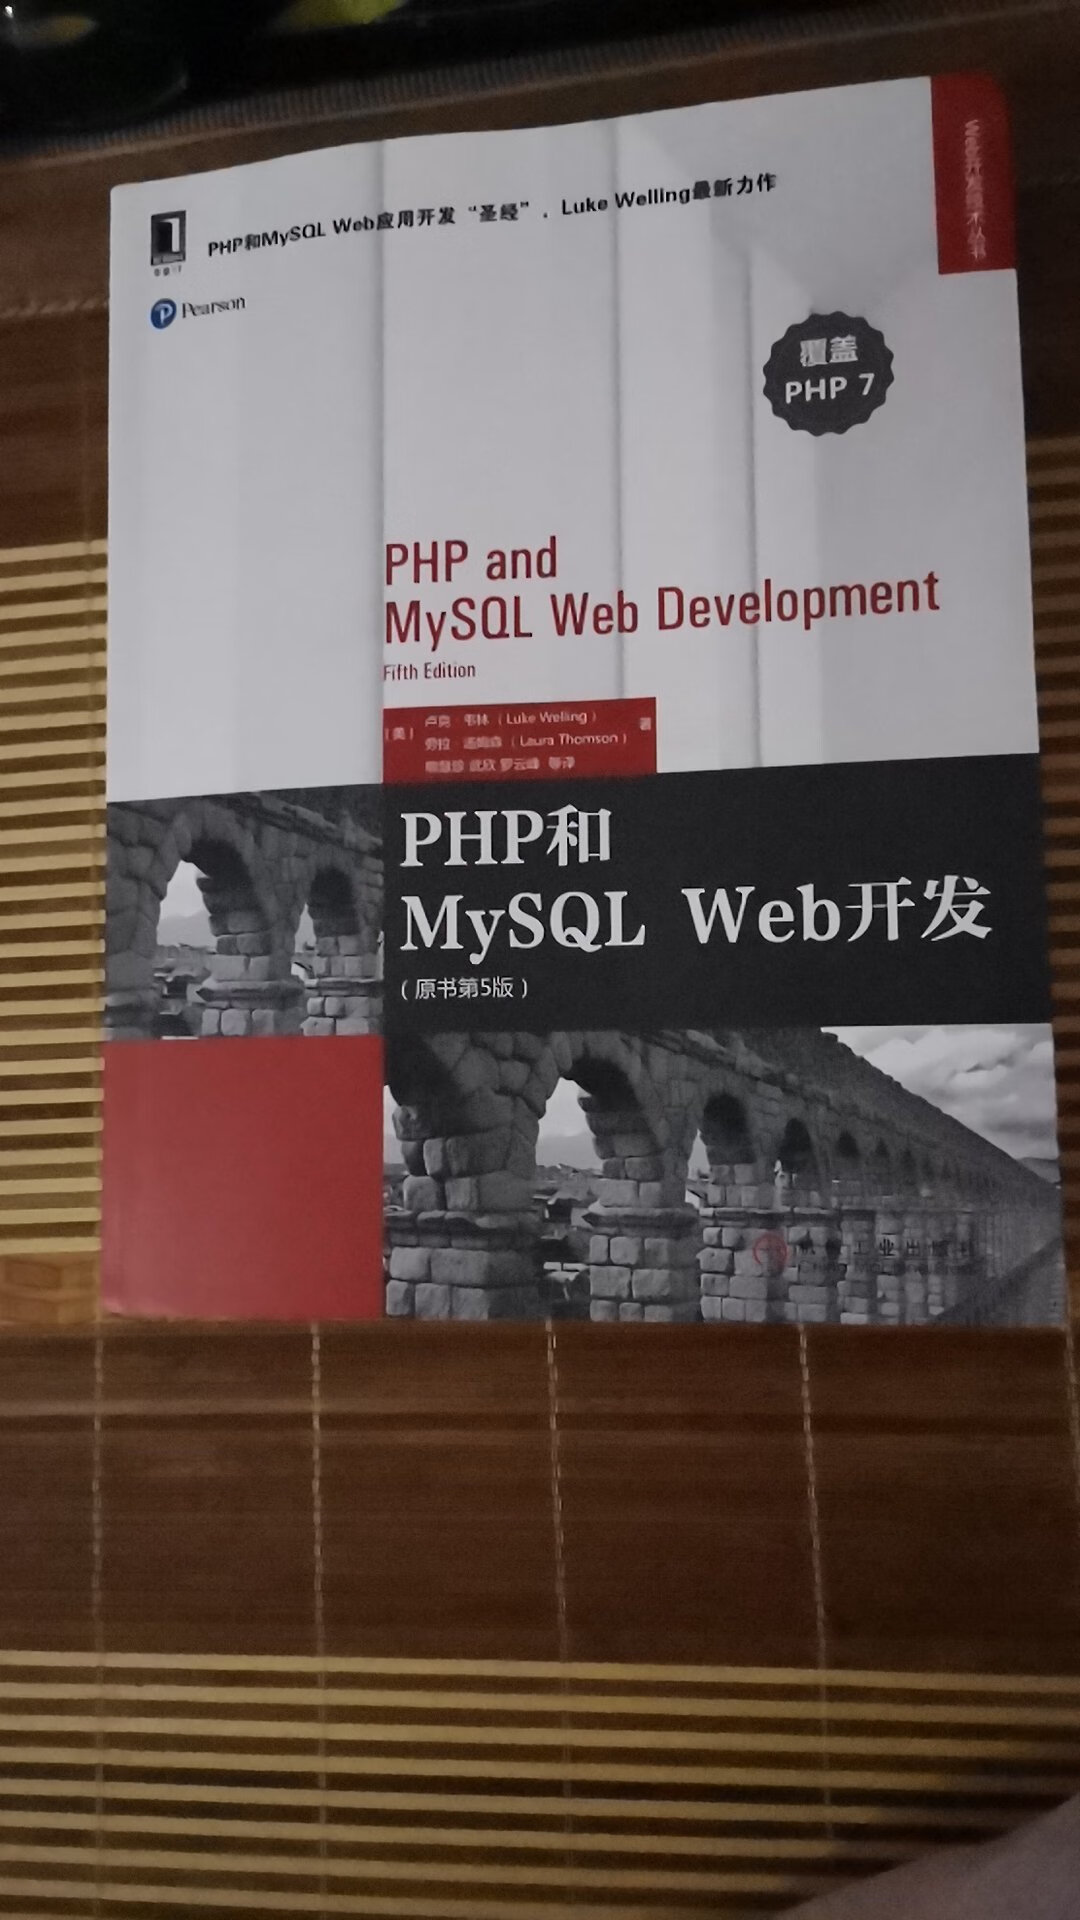 经典的php开发图书，印刷精美深入浅出。